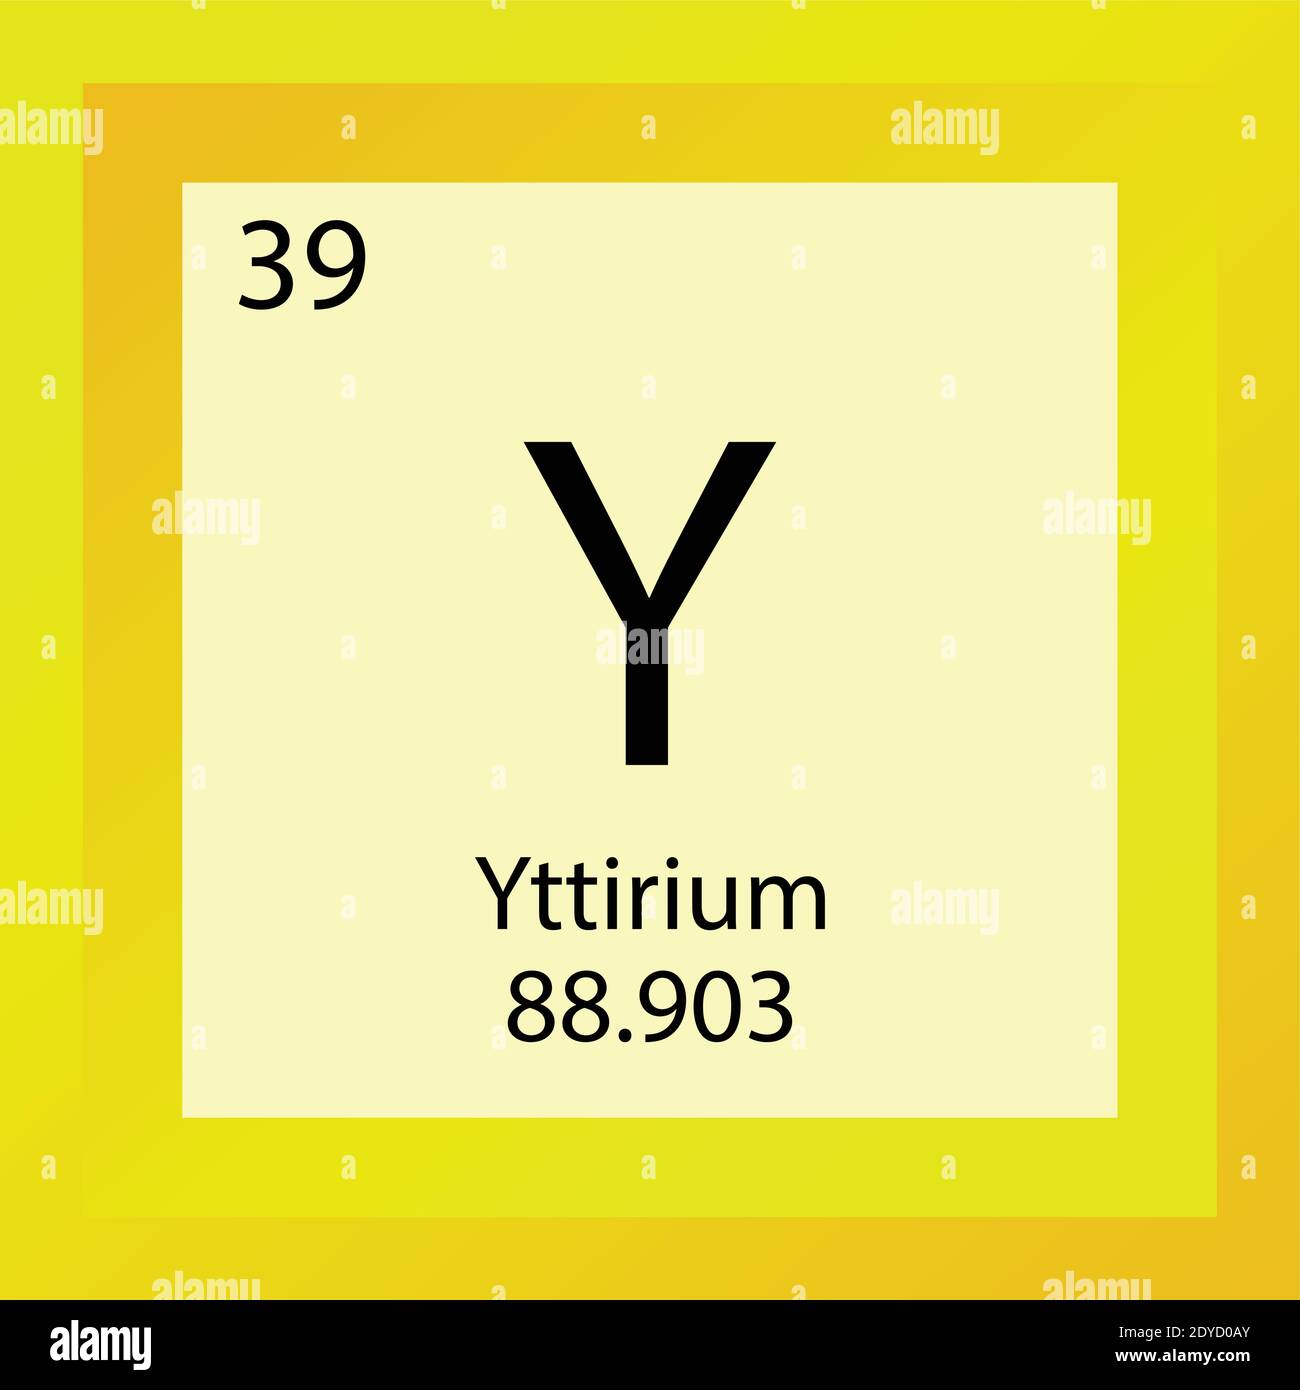 Y Yttrium Periodensystem für chemische Elemente. Einzelelement Vektordarstellung, Übergangsmetalle Elementsymbol mit molarer Masse und Ordnungszahl. Stock Vektor